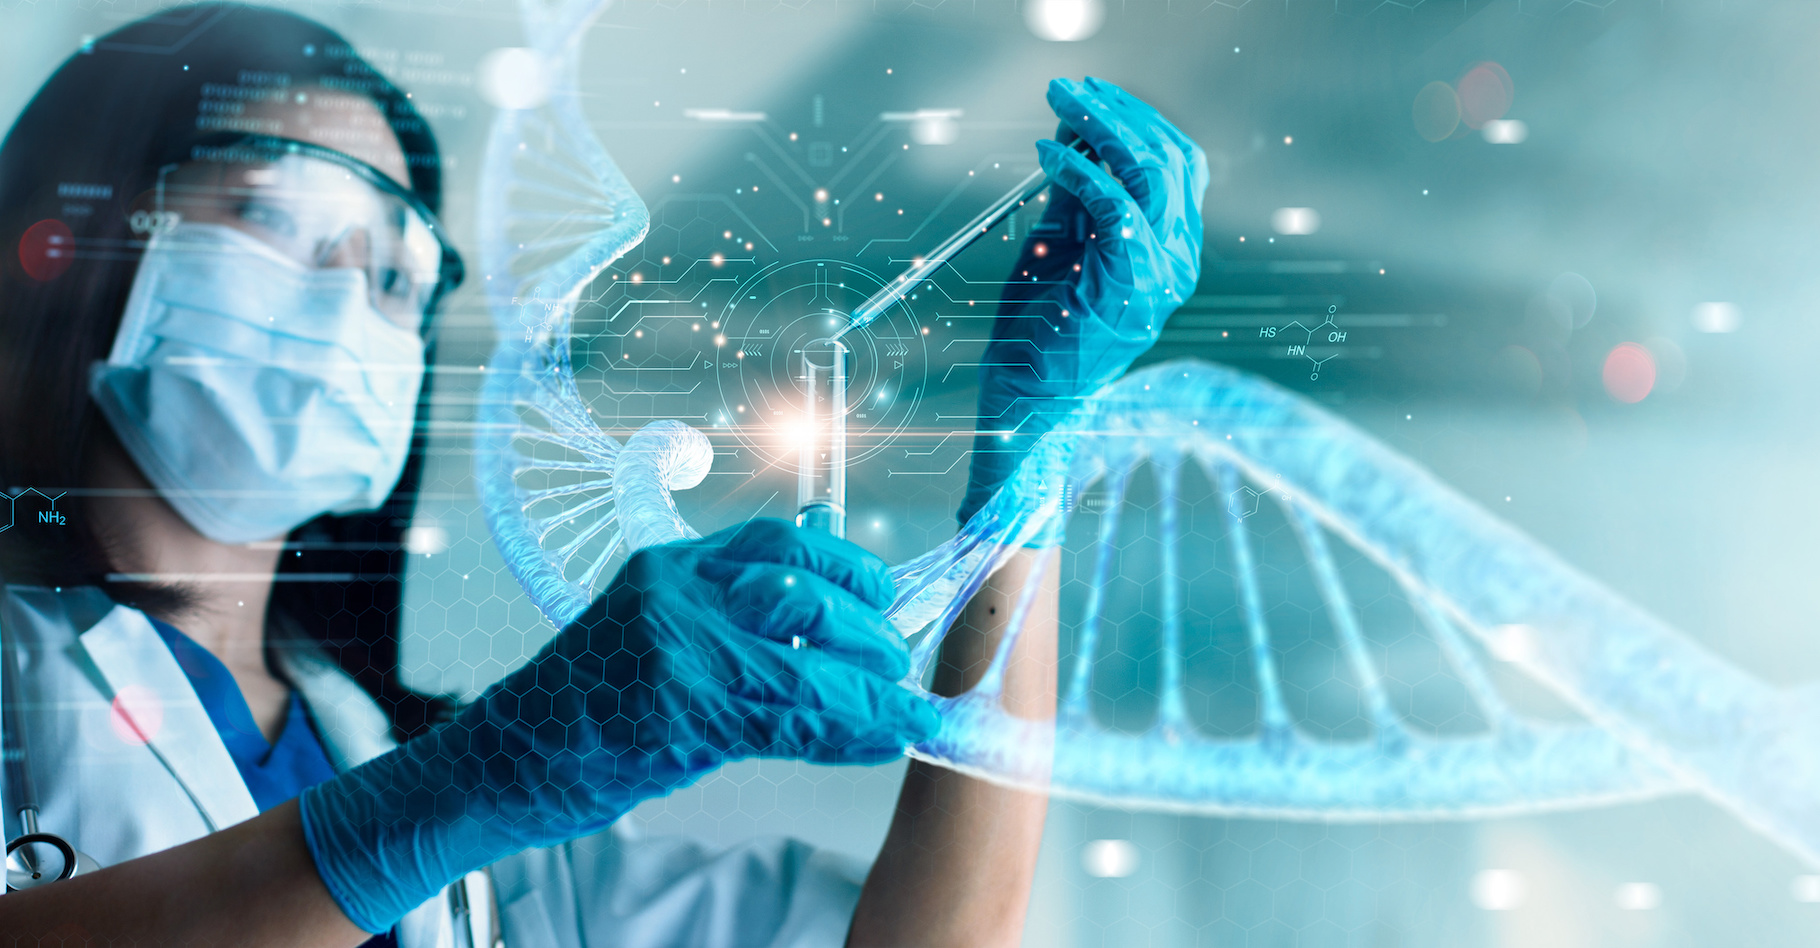 Des chercheurs montrent qu’il est possible de faire parler assez facilement de l’ADN humain trouvé « par hasard » dans l’environnement. © ipopba, Adobe Stock